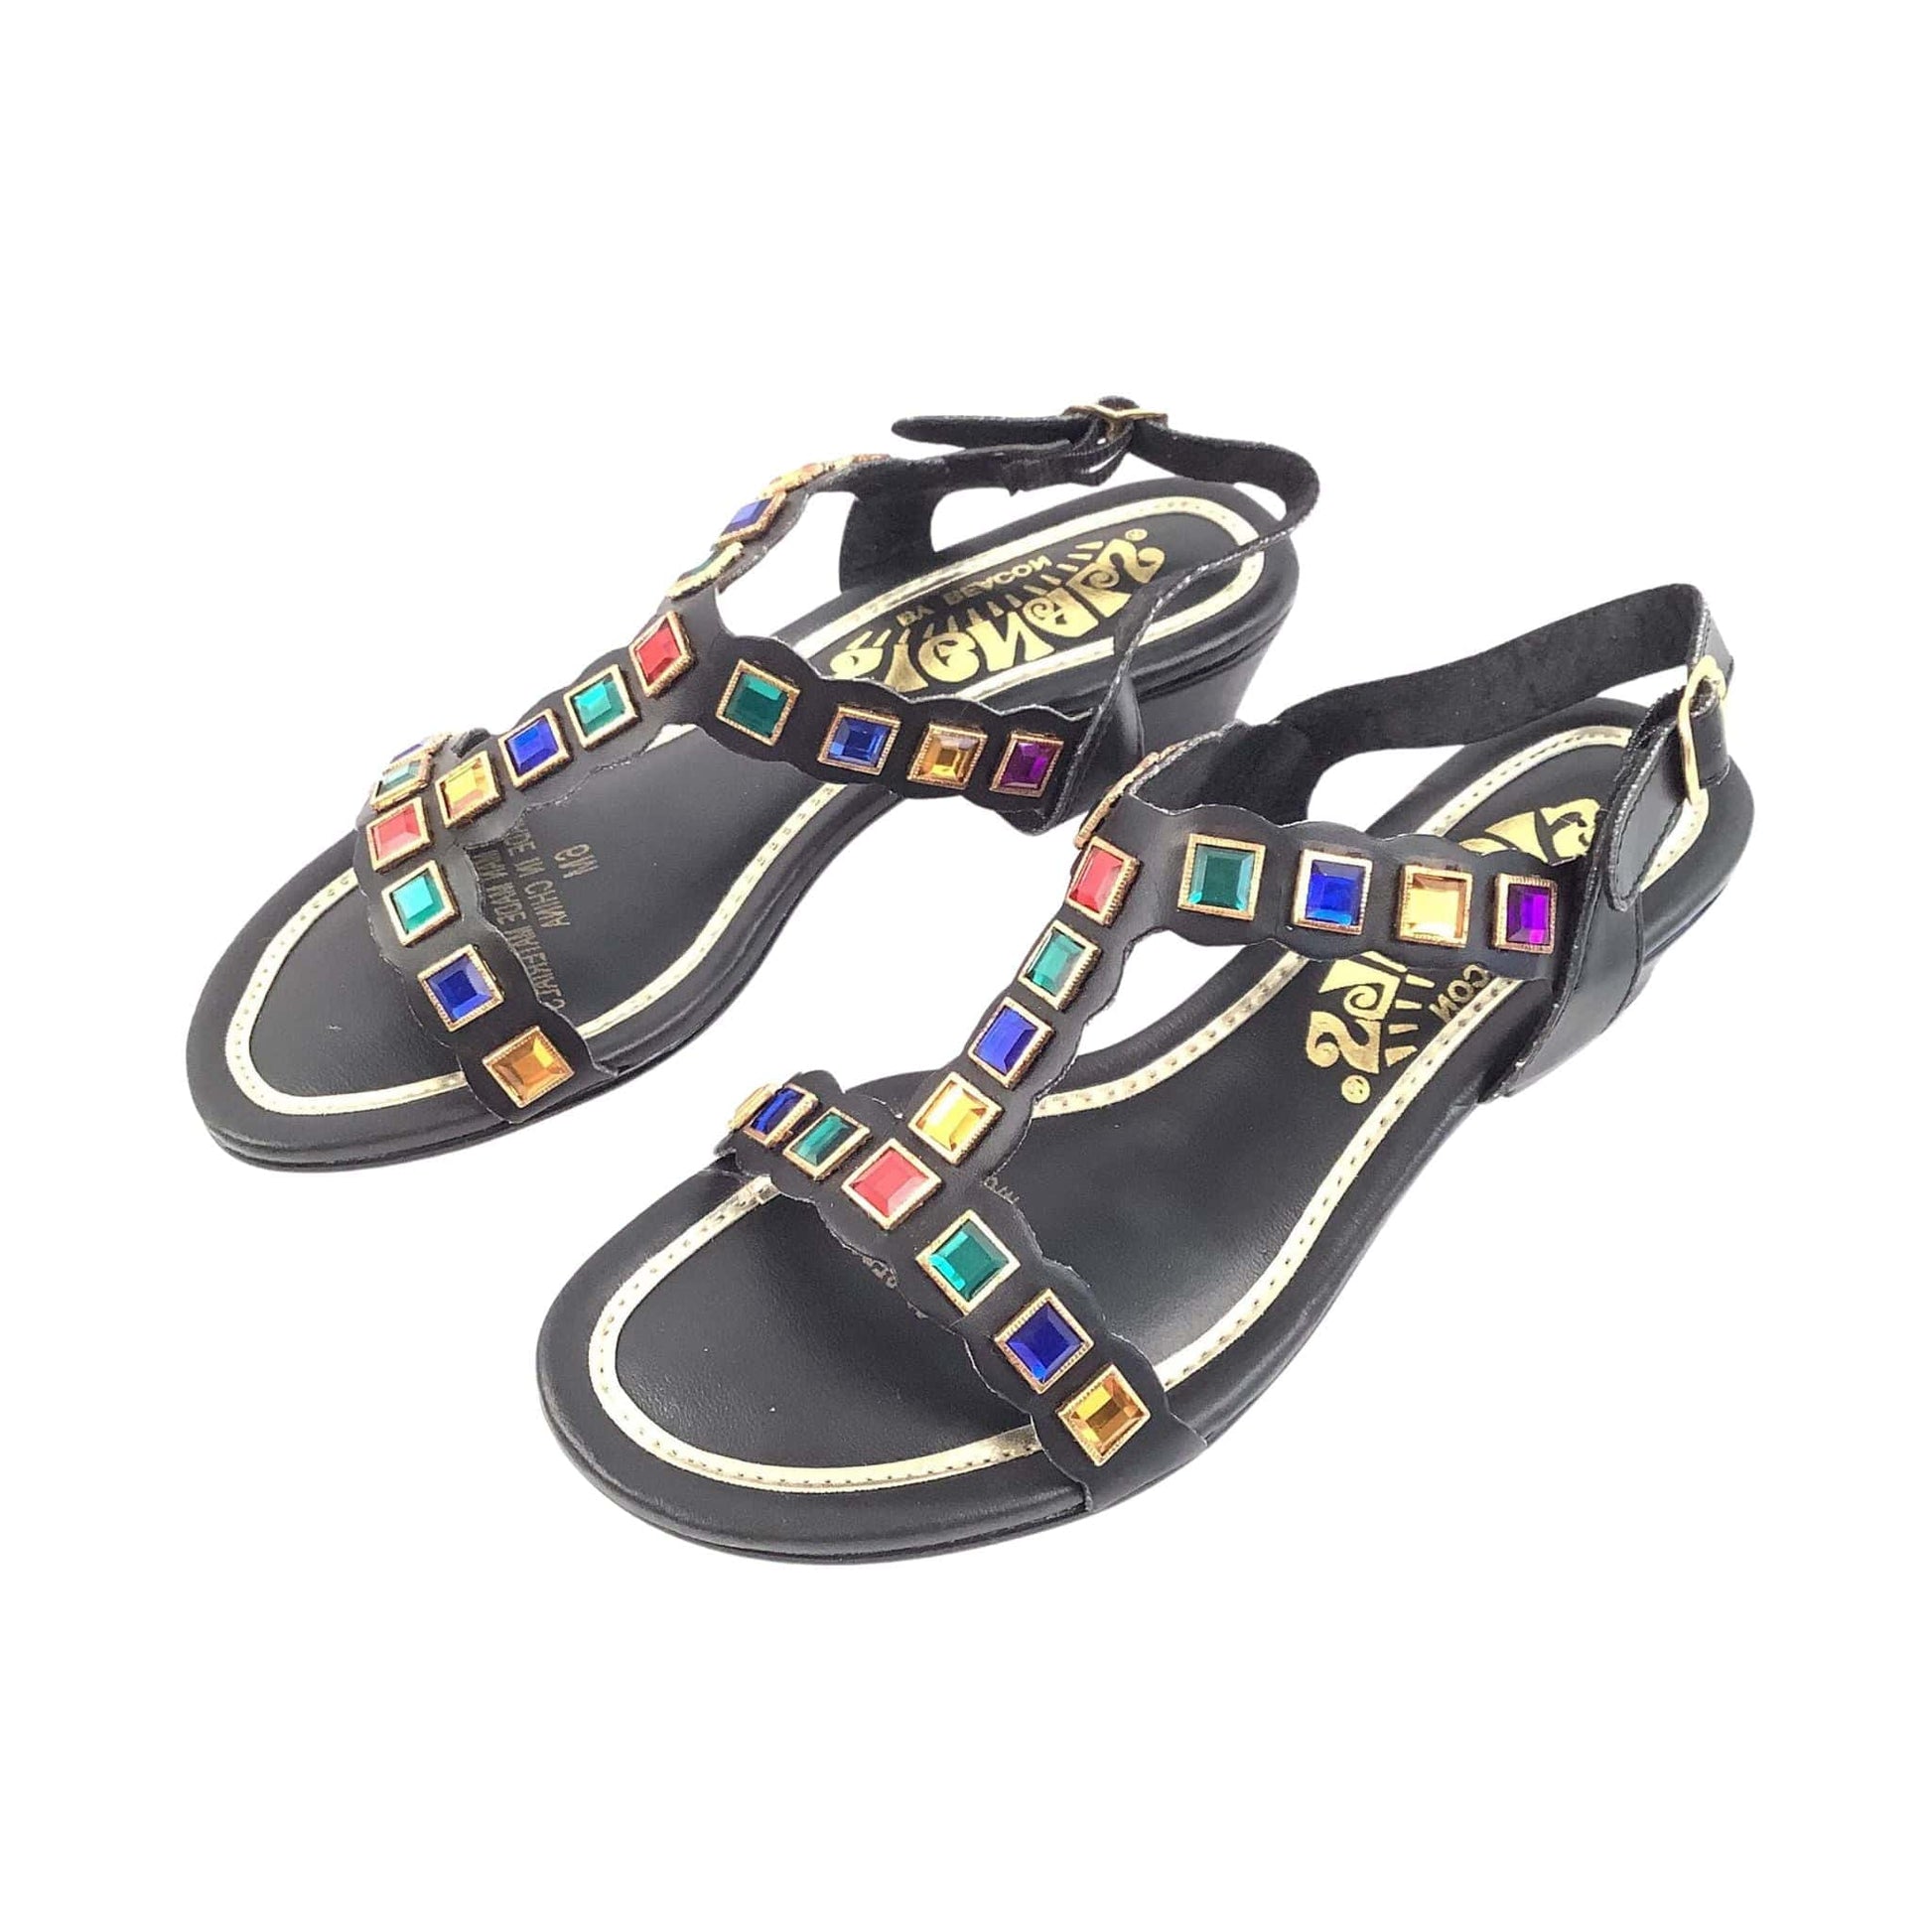 1960s Bejeweled Sandals 6.5 / Black / Vintage 1960s